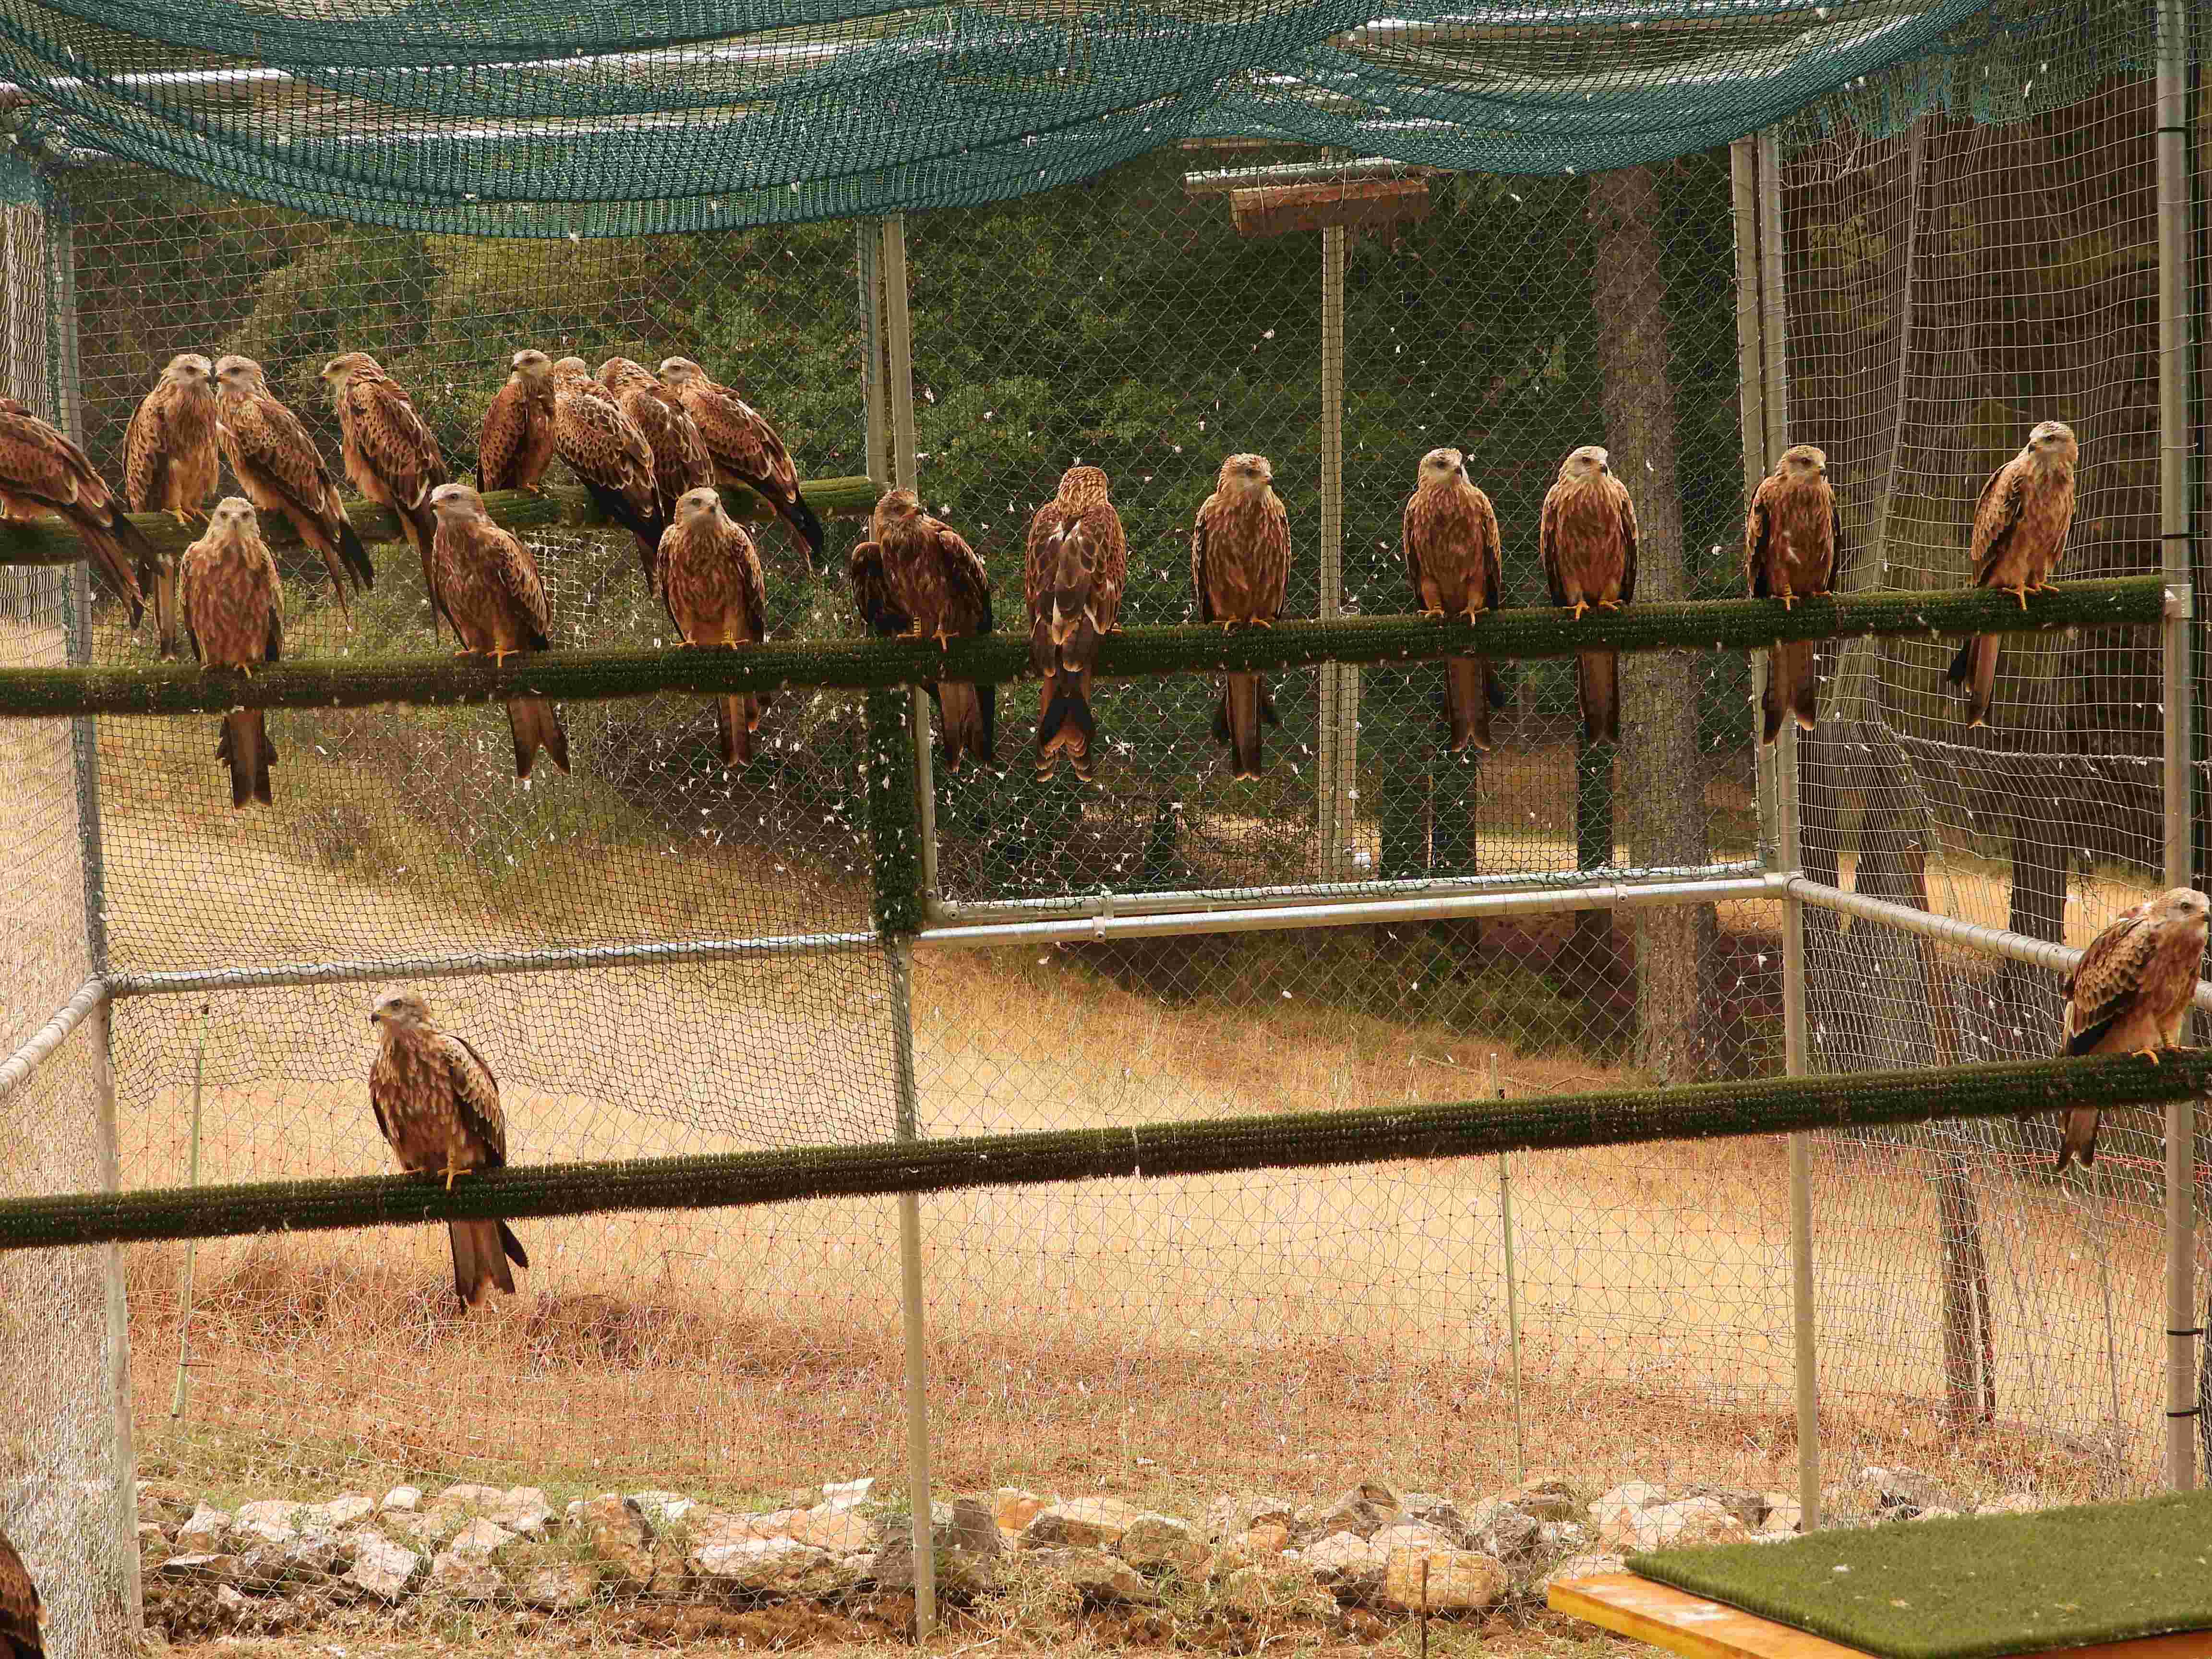 Milanos reales en el jaulón de aclimatación de Cazorla, poco antes de su liberación definitiva. Imagen: Grefa